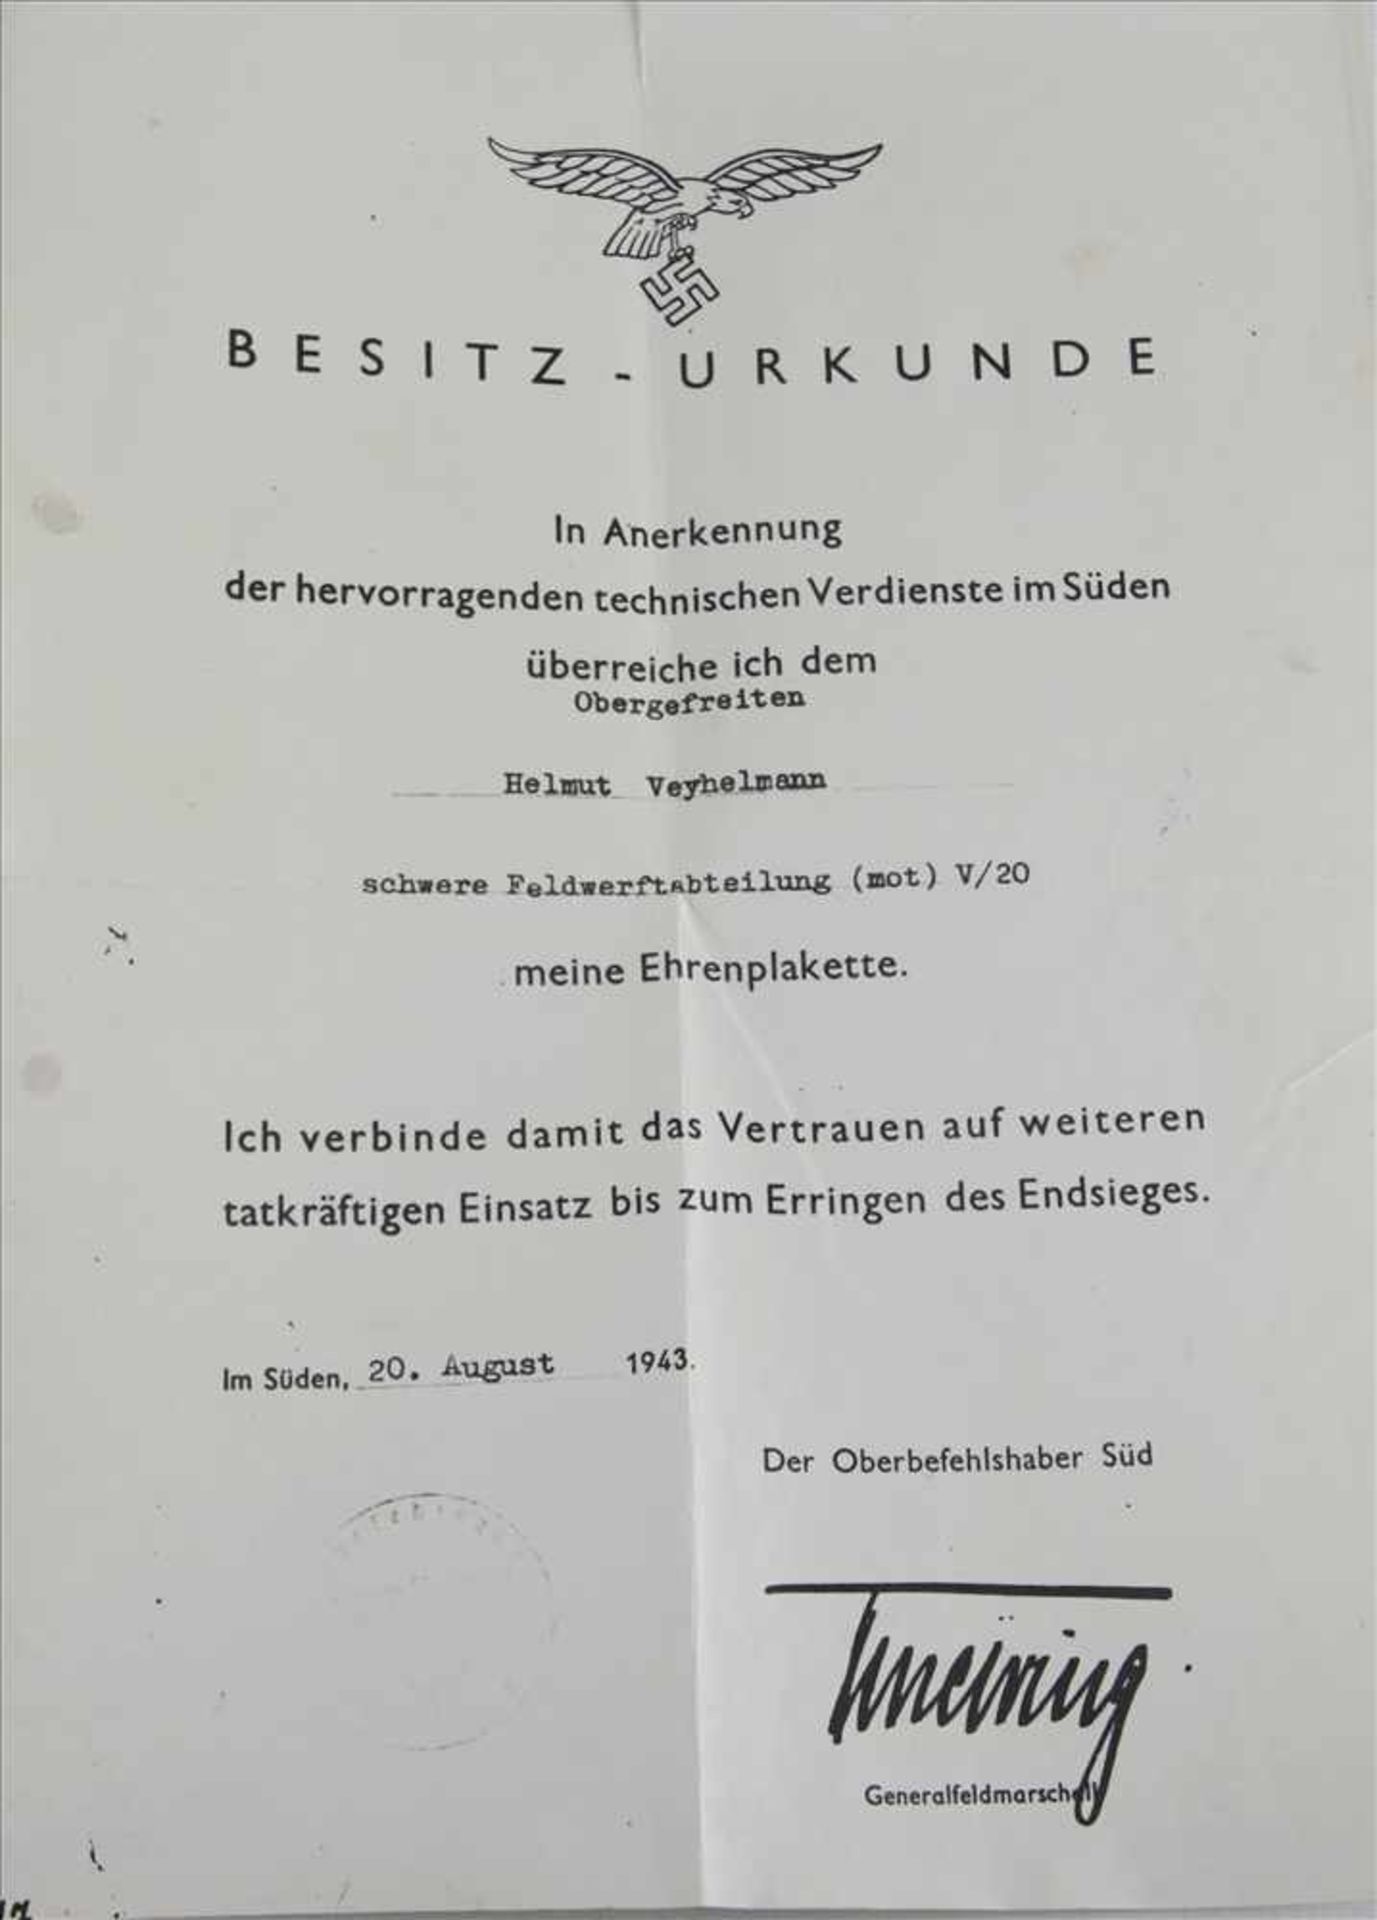 Ehrenplakettedes Oberbefehlshabers Süd. III. Reich. Luftwaffe für besondere technische Verdienste, - Bild 3 aus 3